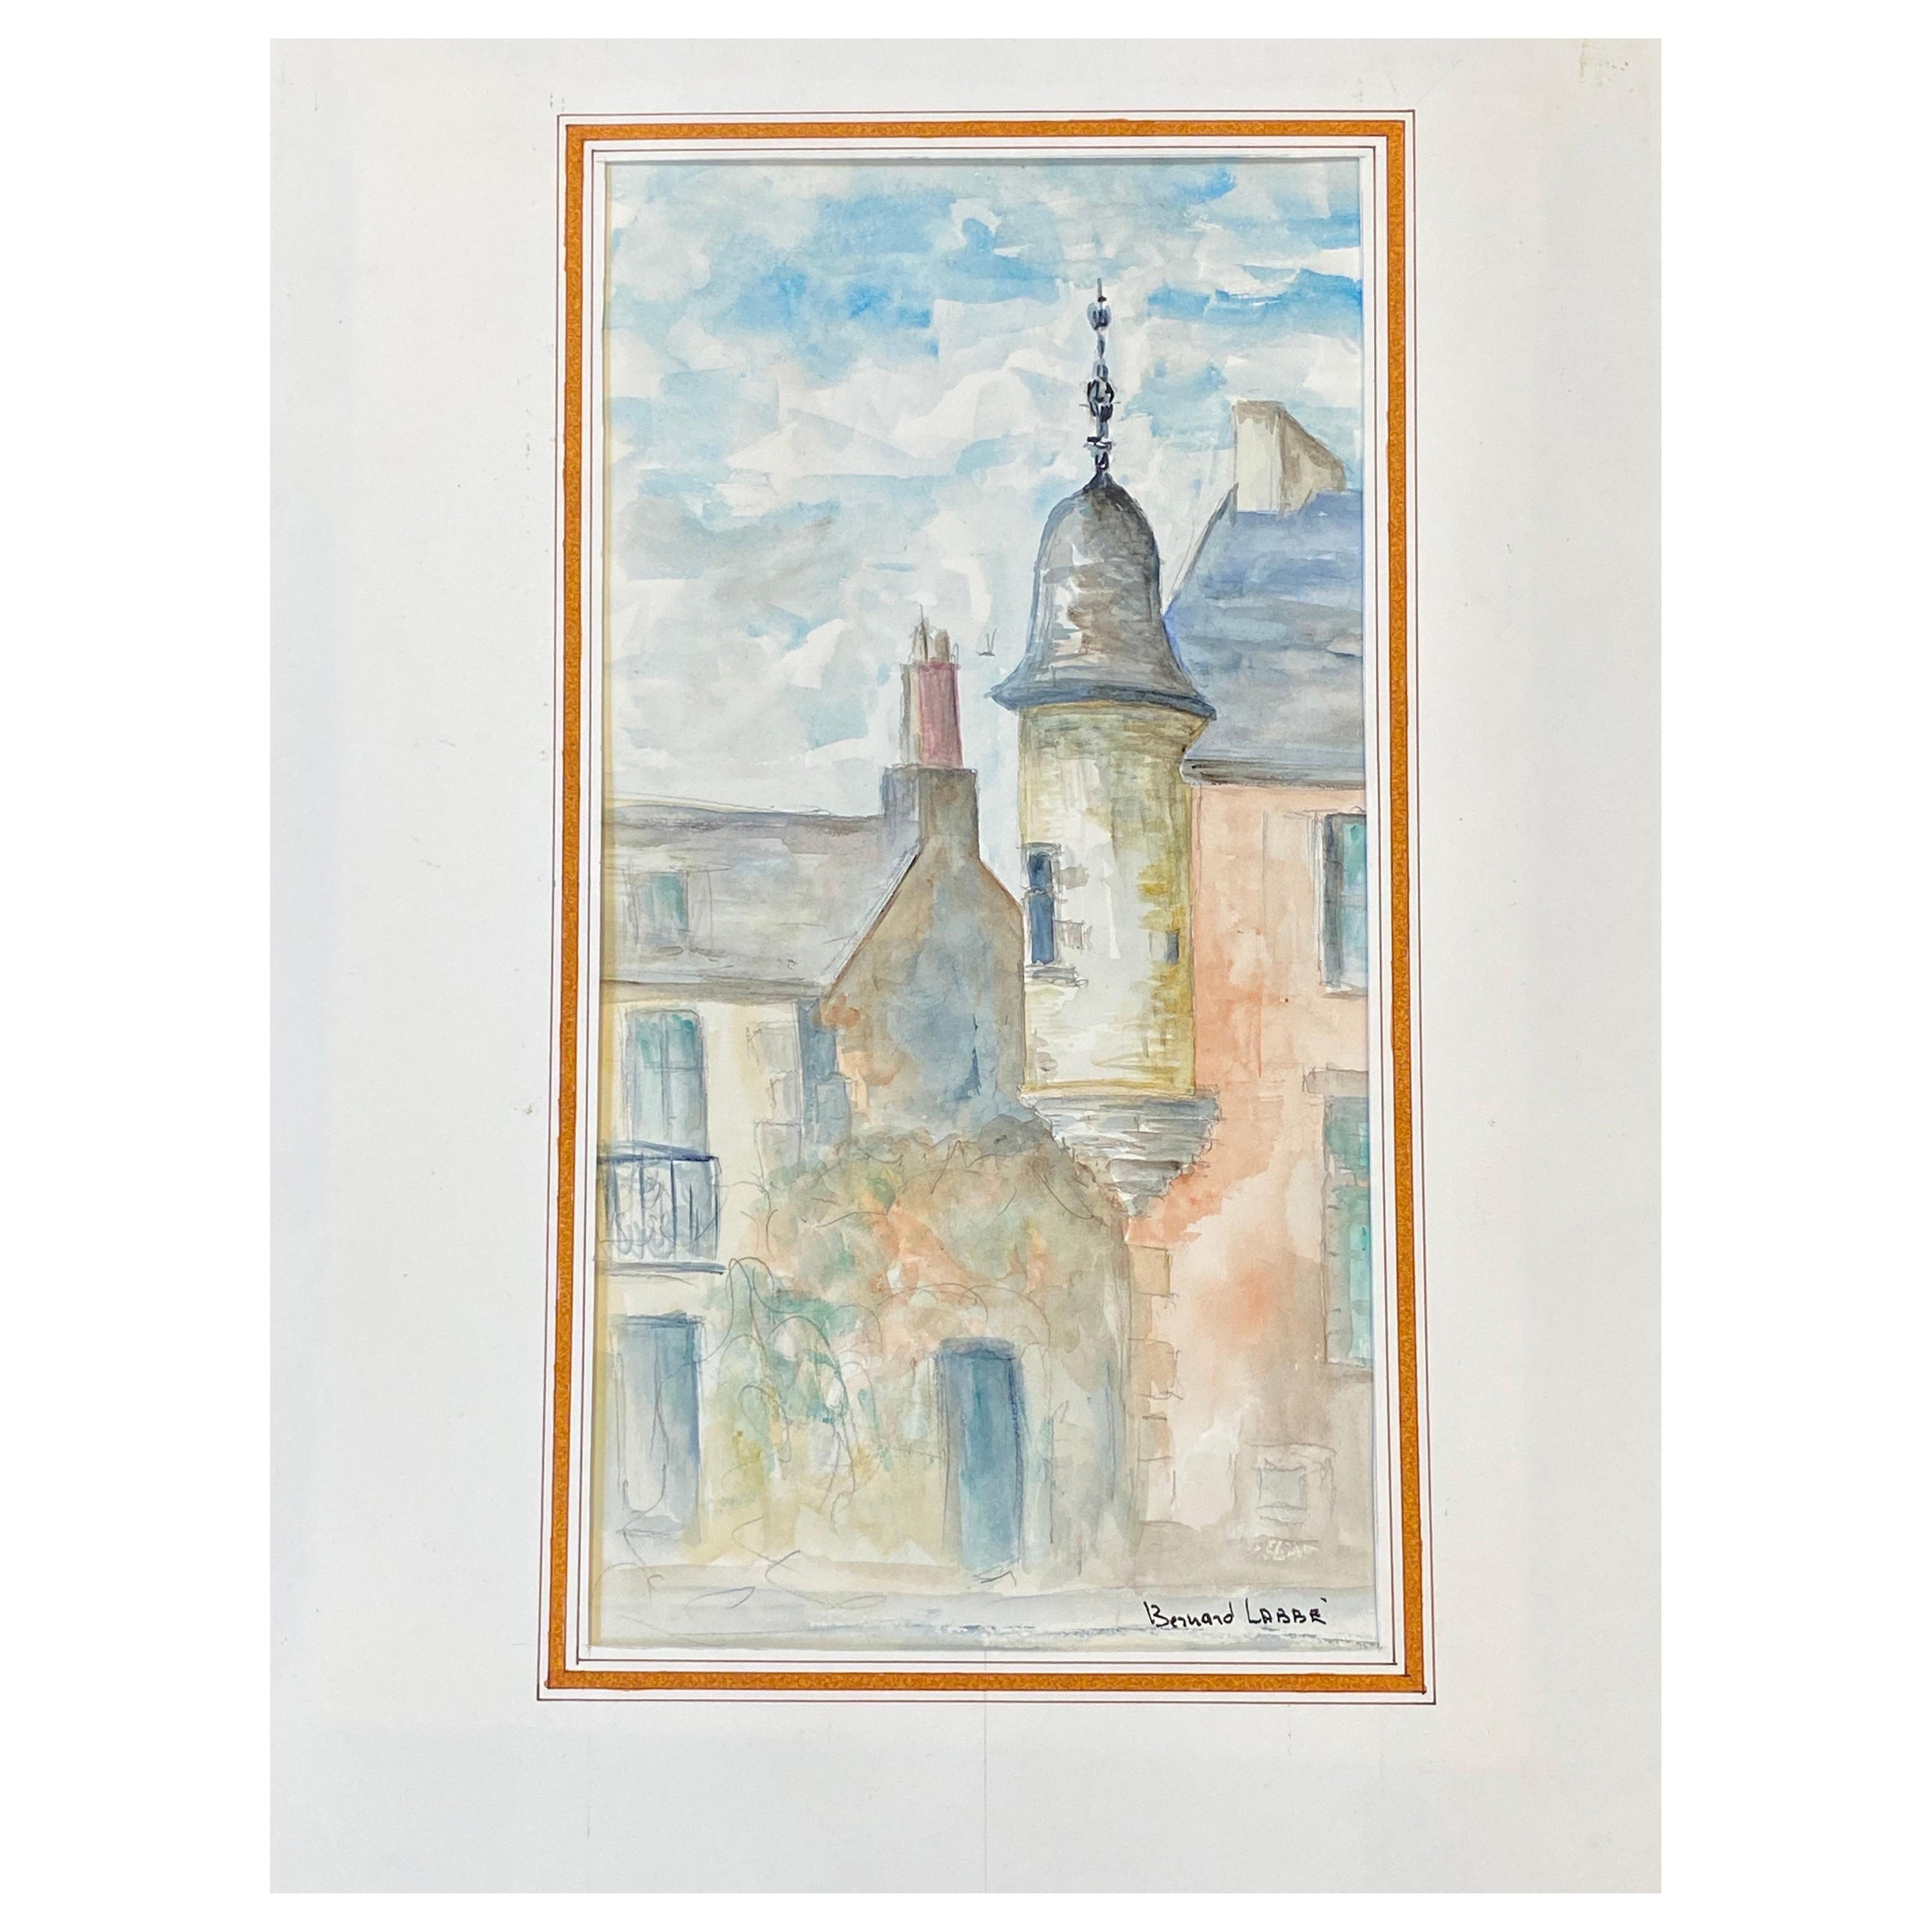 Peinture moderniste/ cubiste française des années 1950 signée, bâtiments français en couleur claire